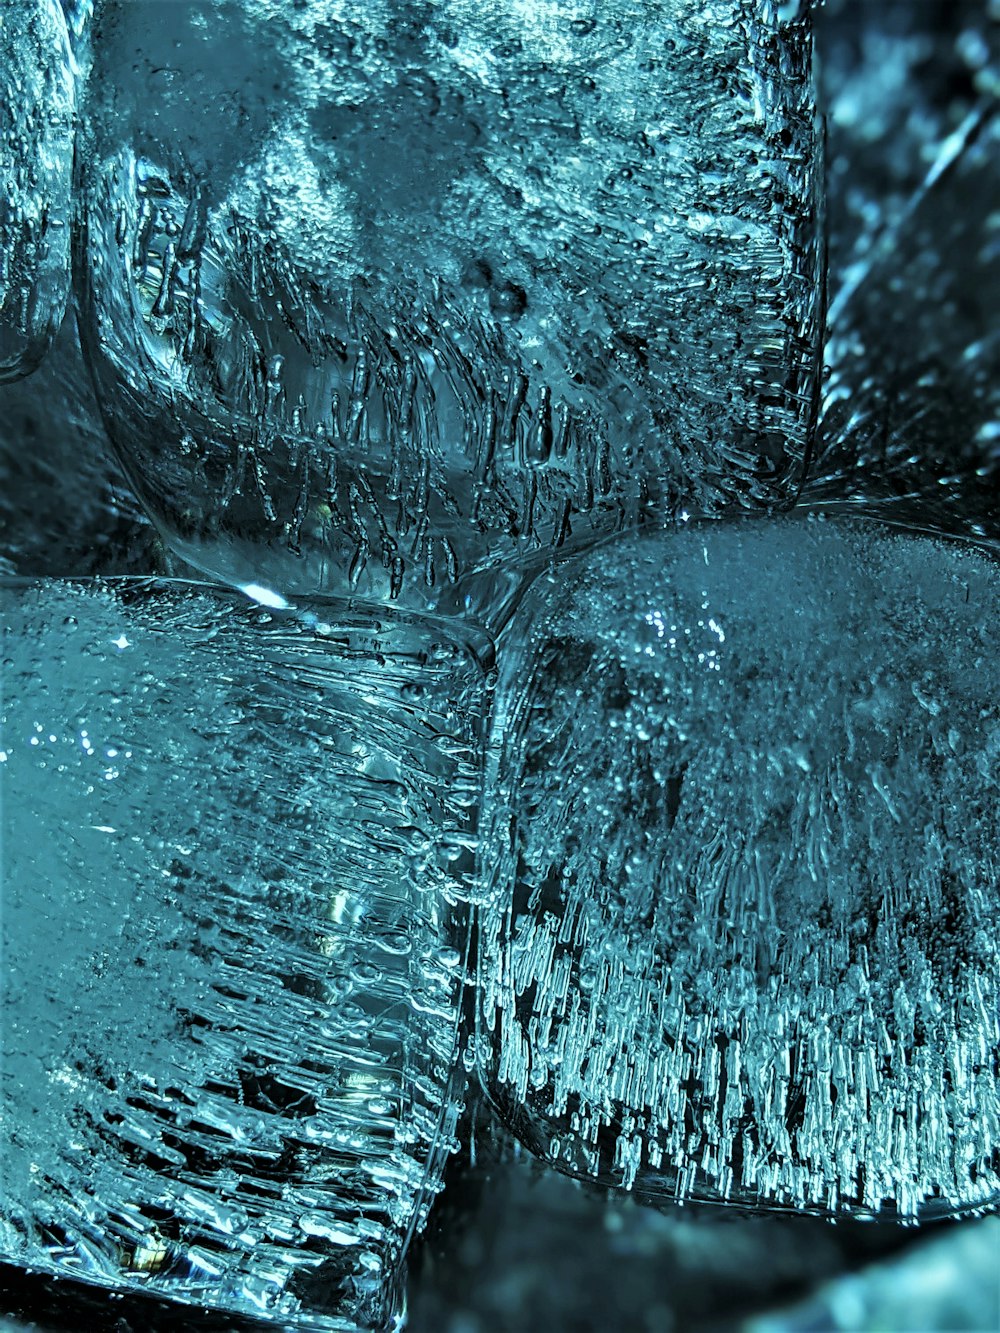 water splash on white surface